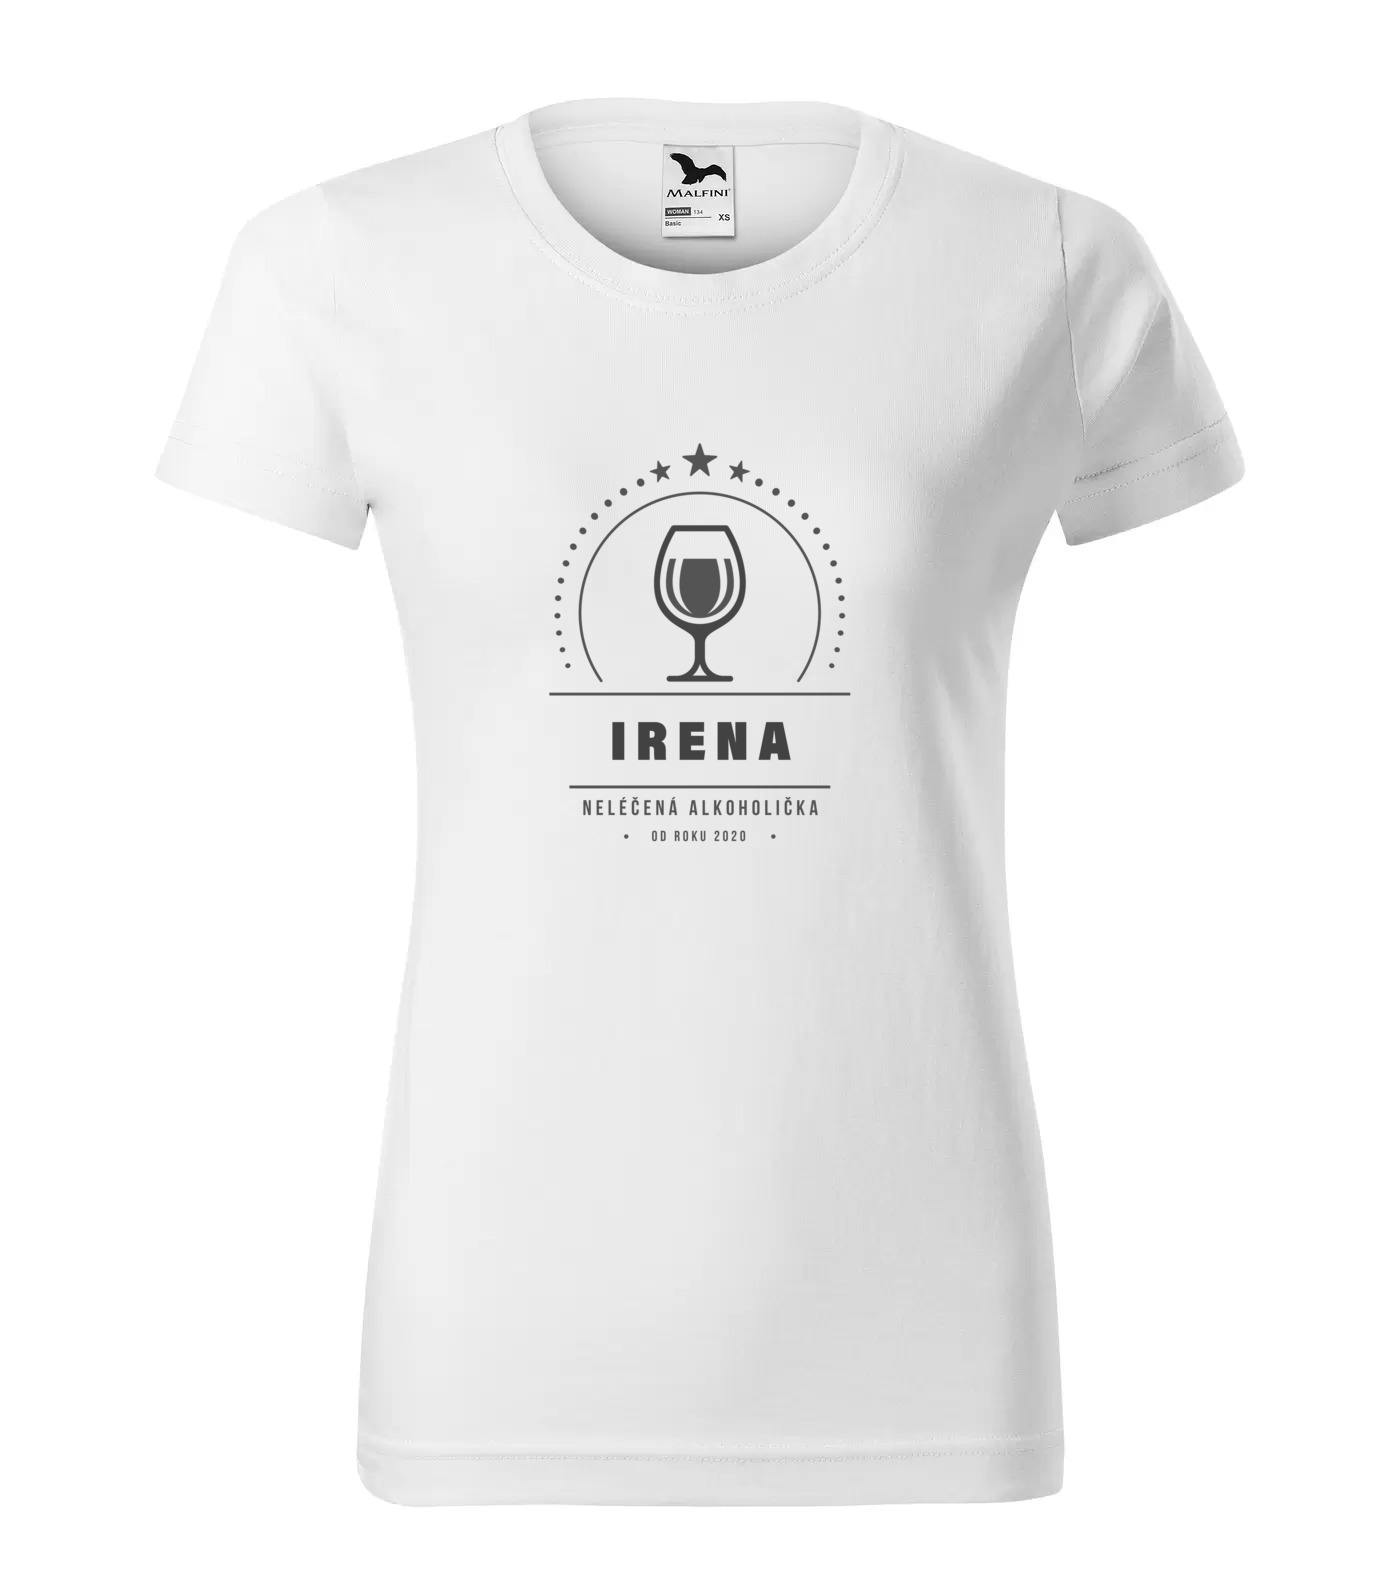 Tričko Alkoholička Irena